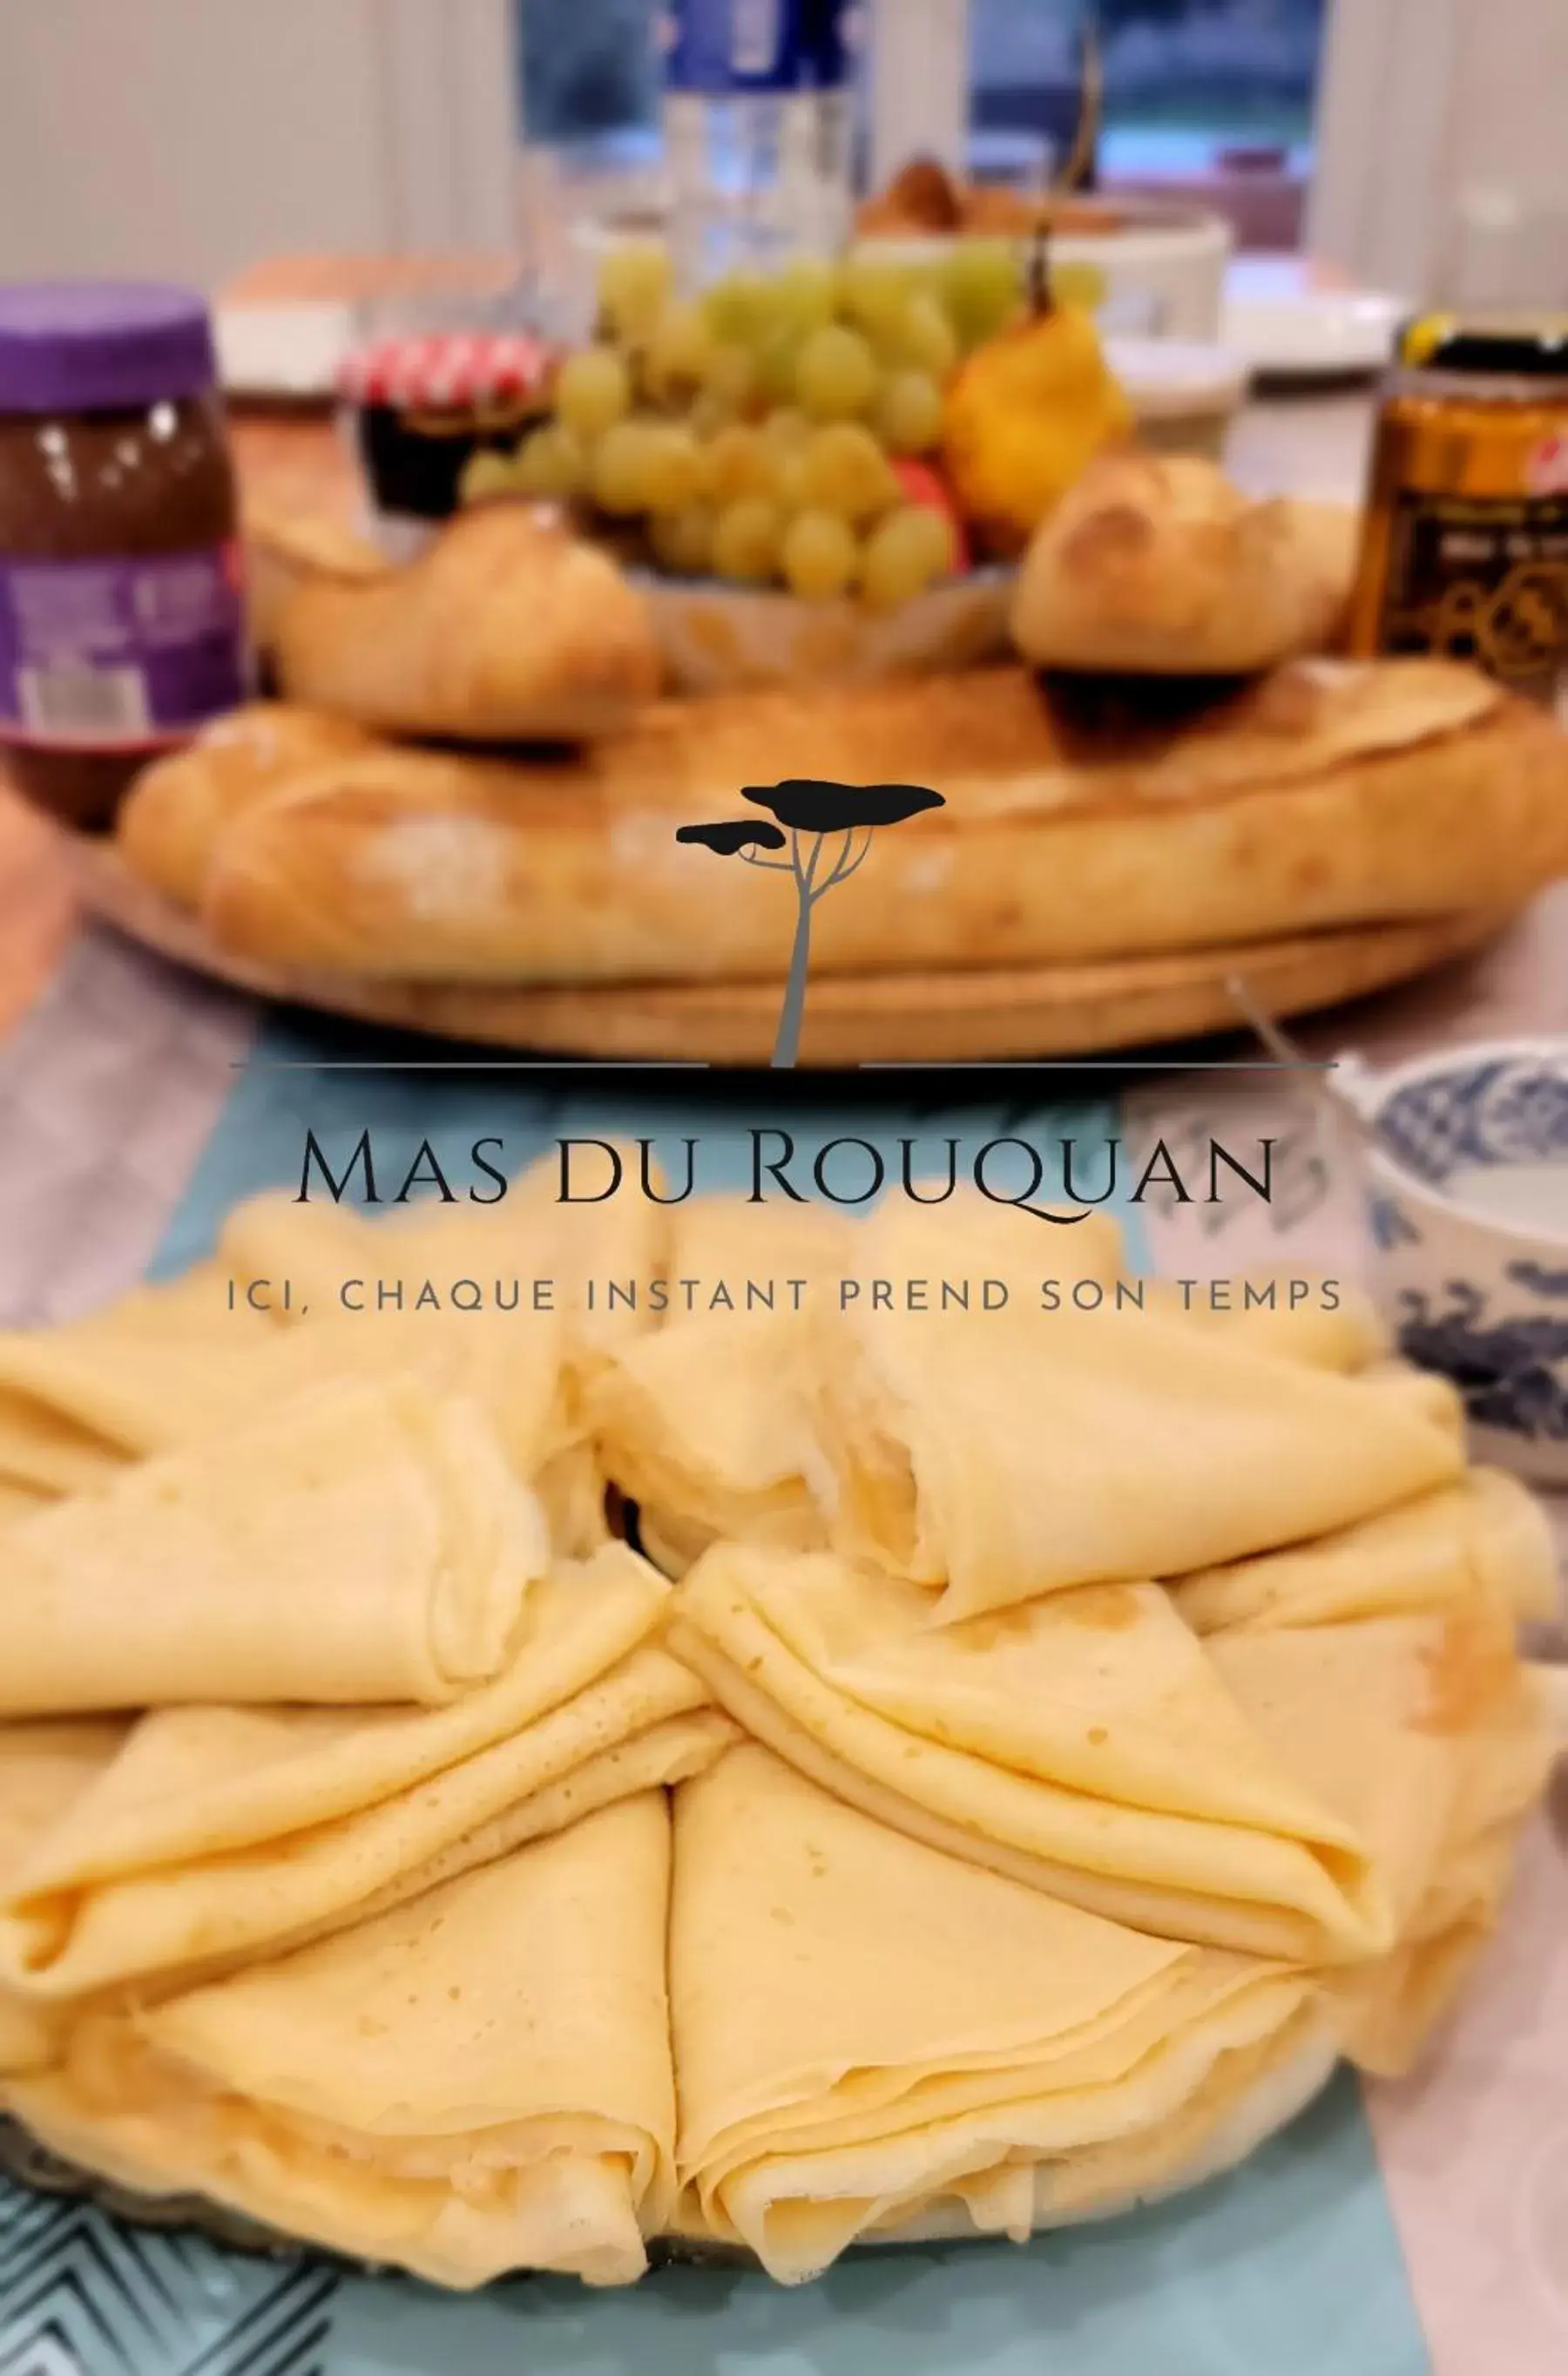 Breakfast in Le Mas du Rouquan